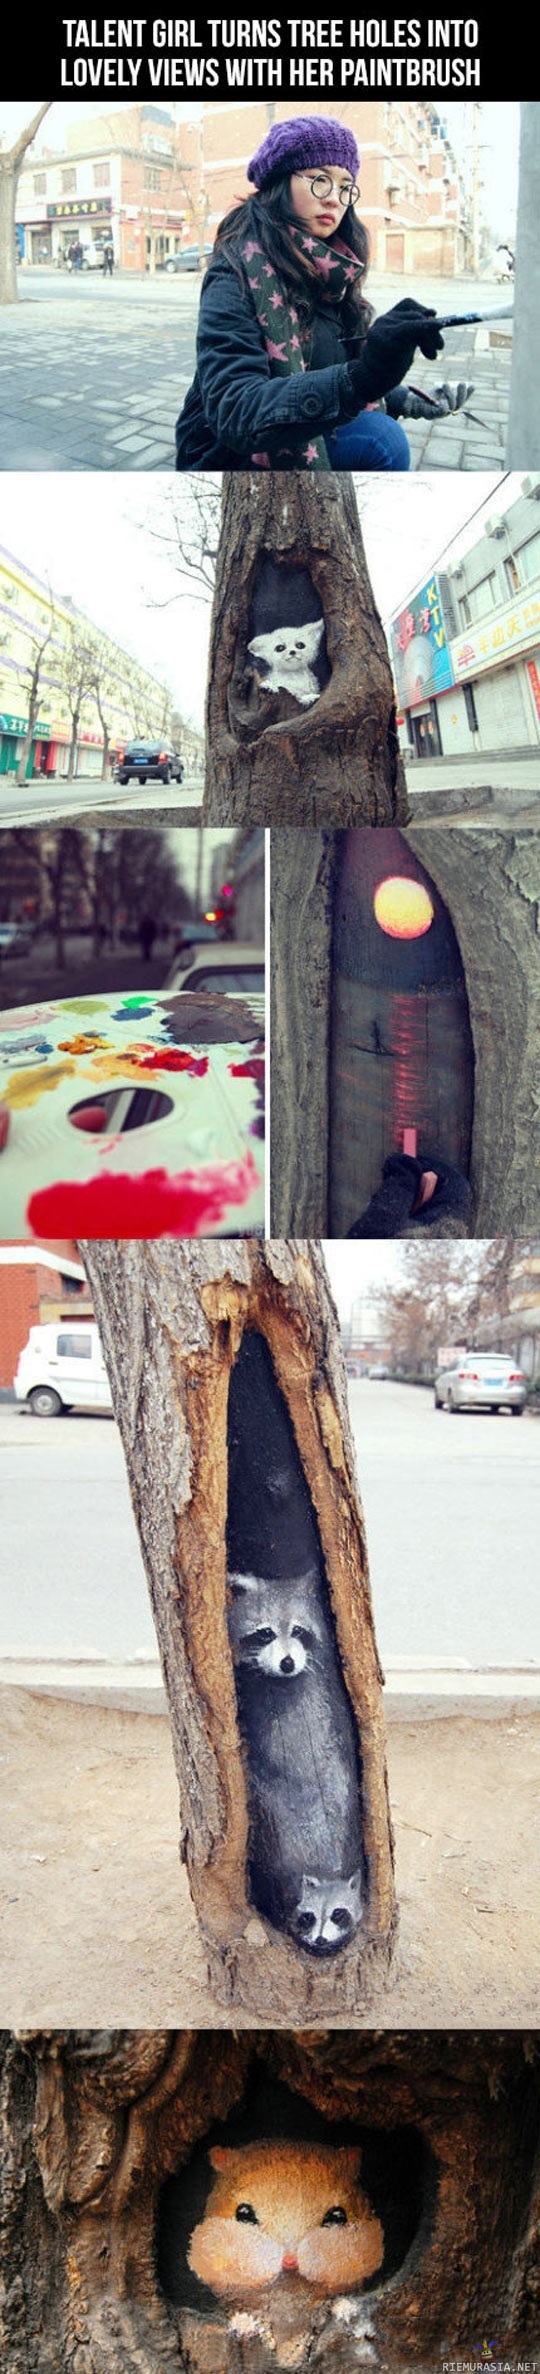 Tyttö maalailee puita